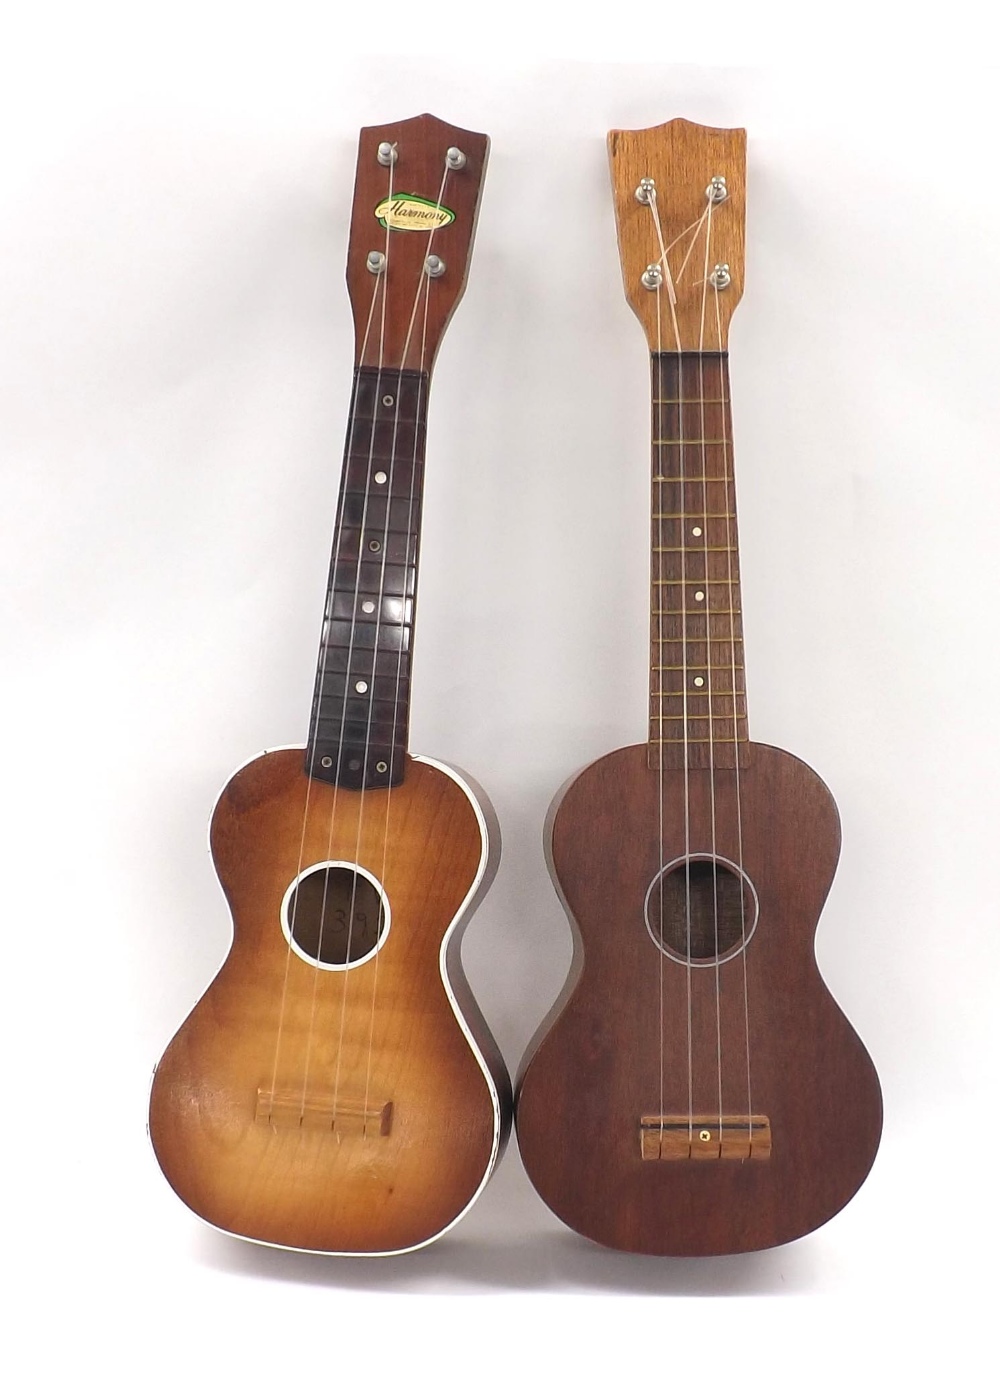 1950s Harmony ukulele; together with an unbranded Japanese made ukulele (2)